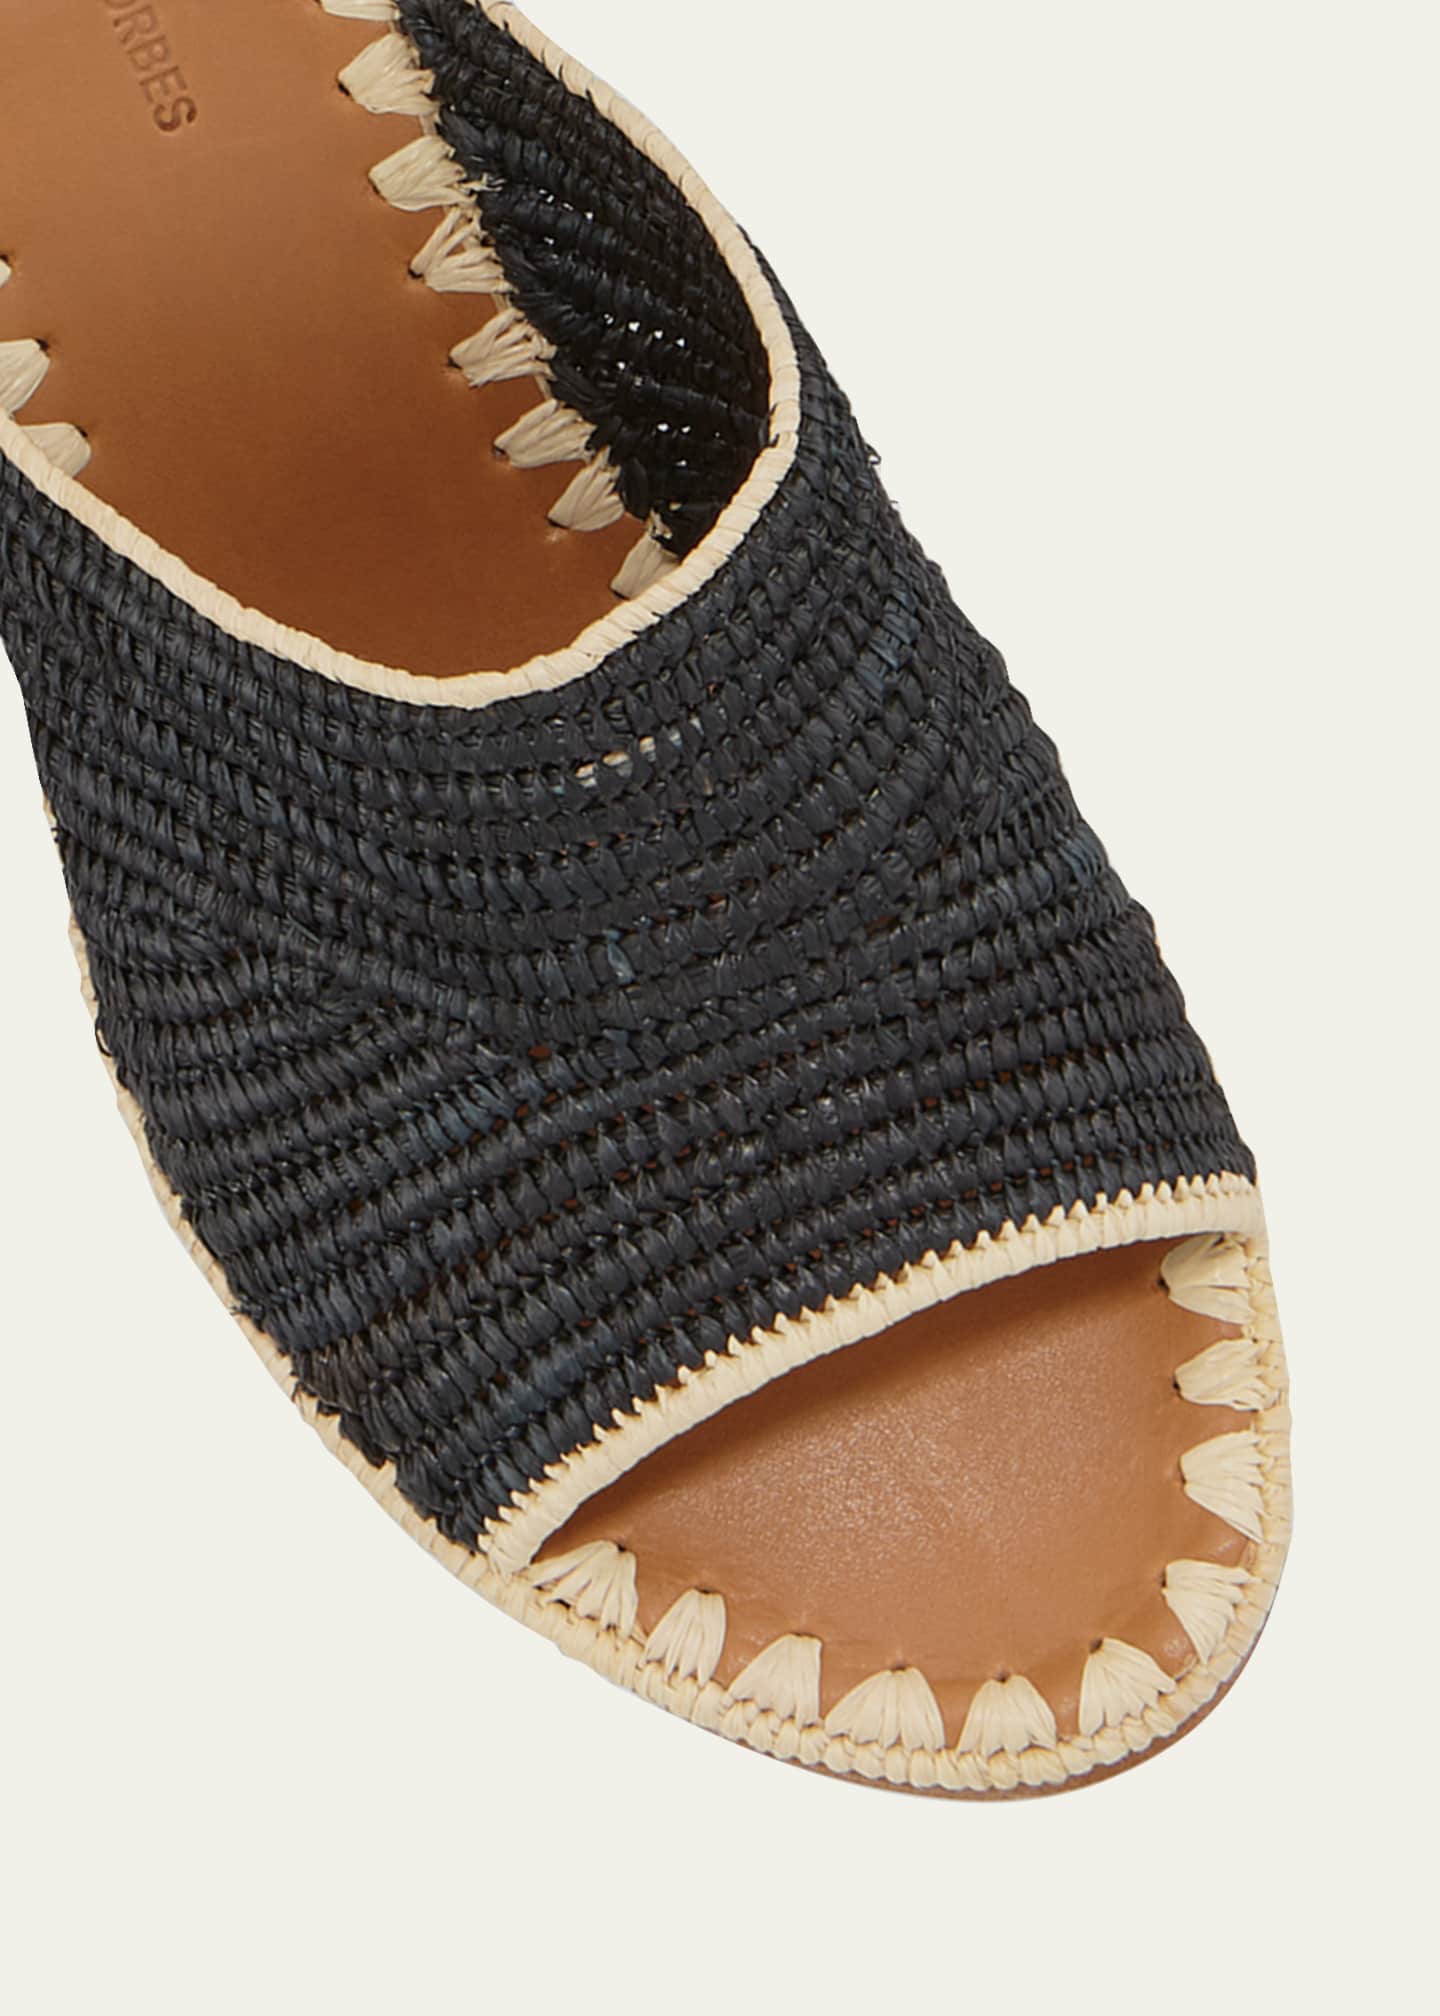 Carrie Forbes Rama Woven Raffia Slide Sandals - Bergdorf Goodman